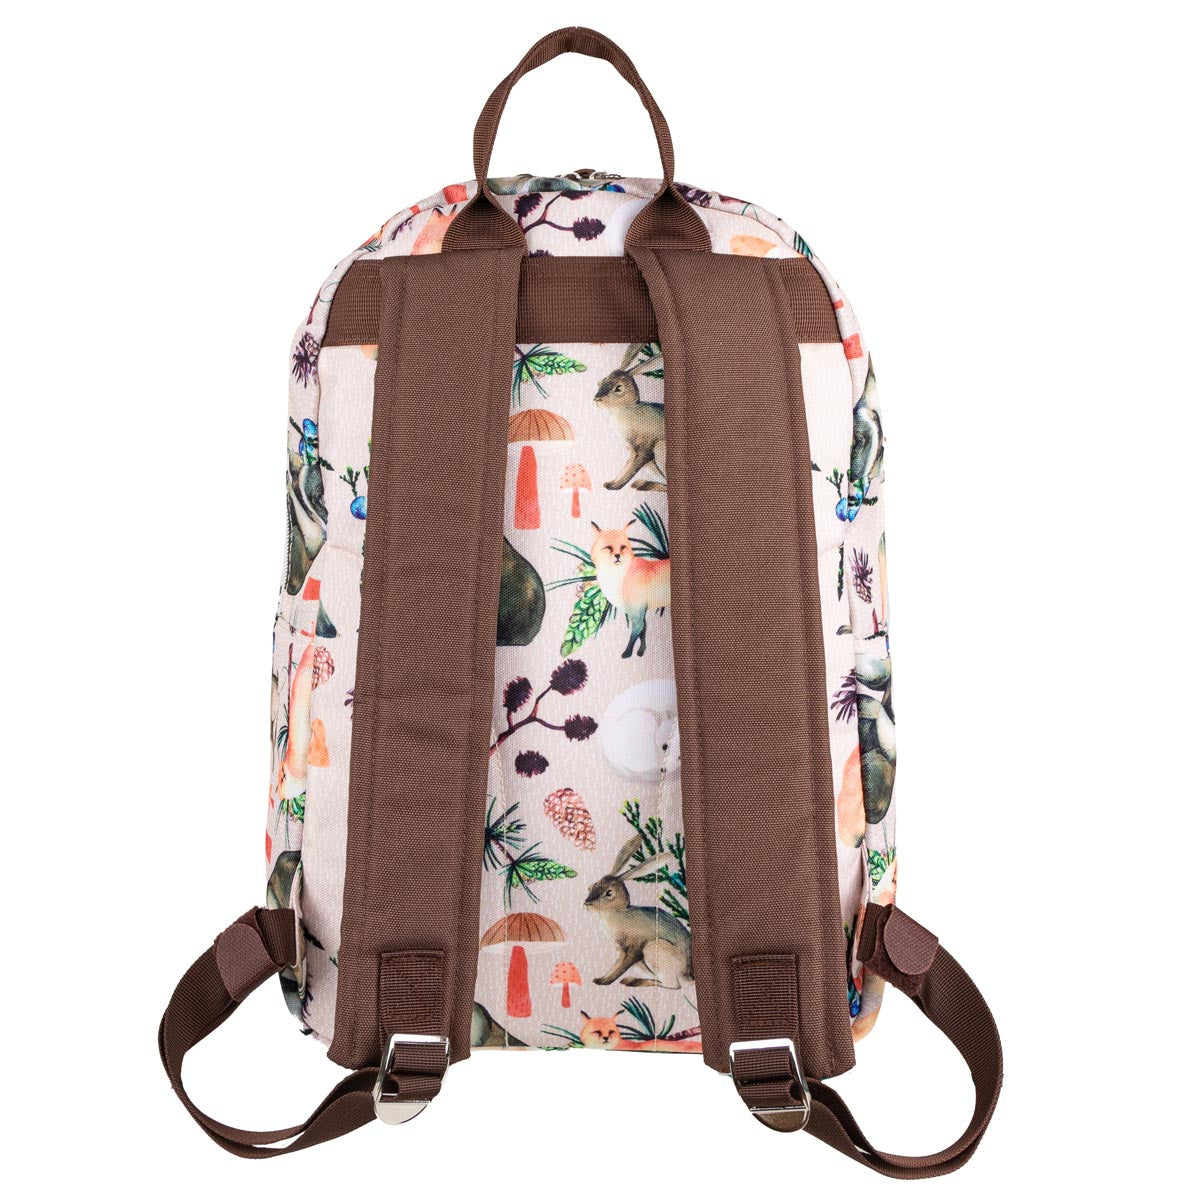 Fauna Backpack, large, beige